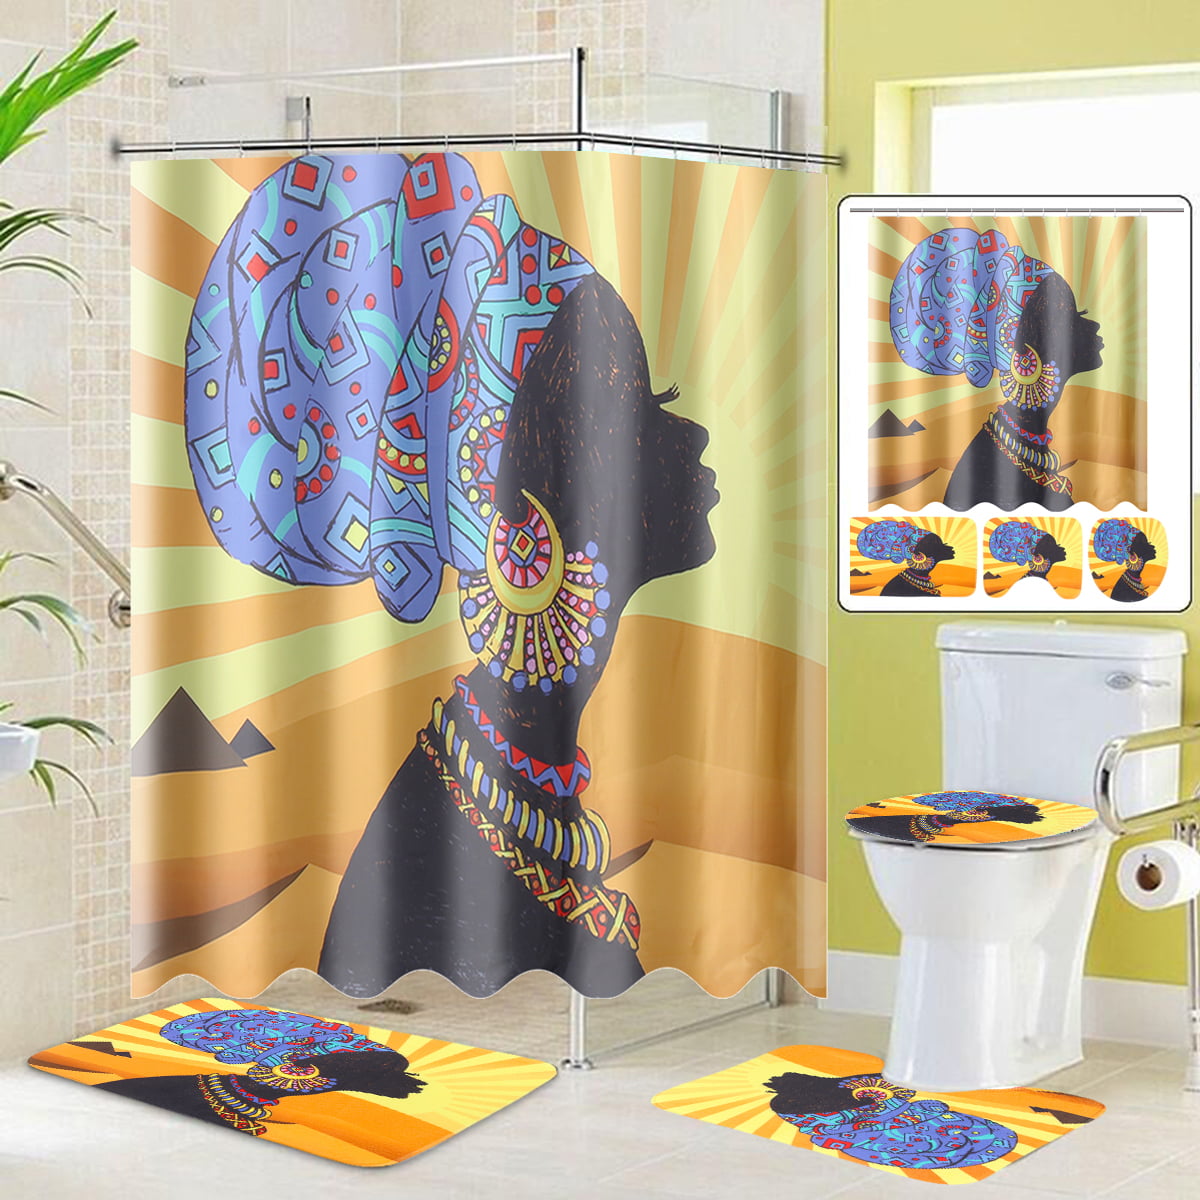 Elephant 3D Shower Curtain Bath Mat Toilet Cover Rug Funny Bathroom Decor Set 